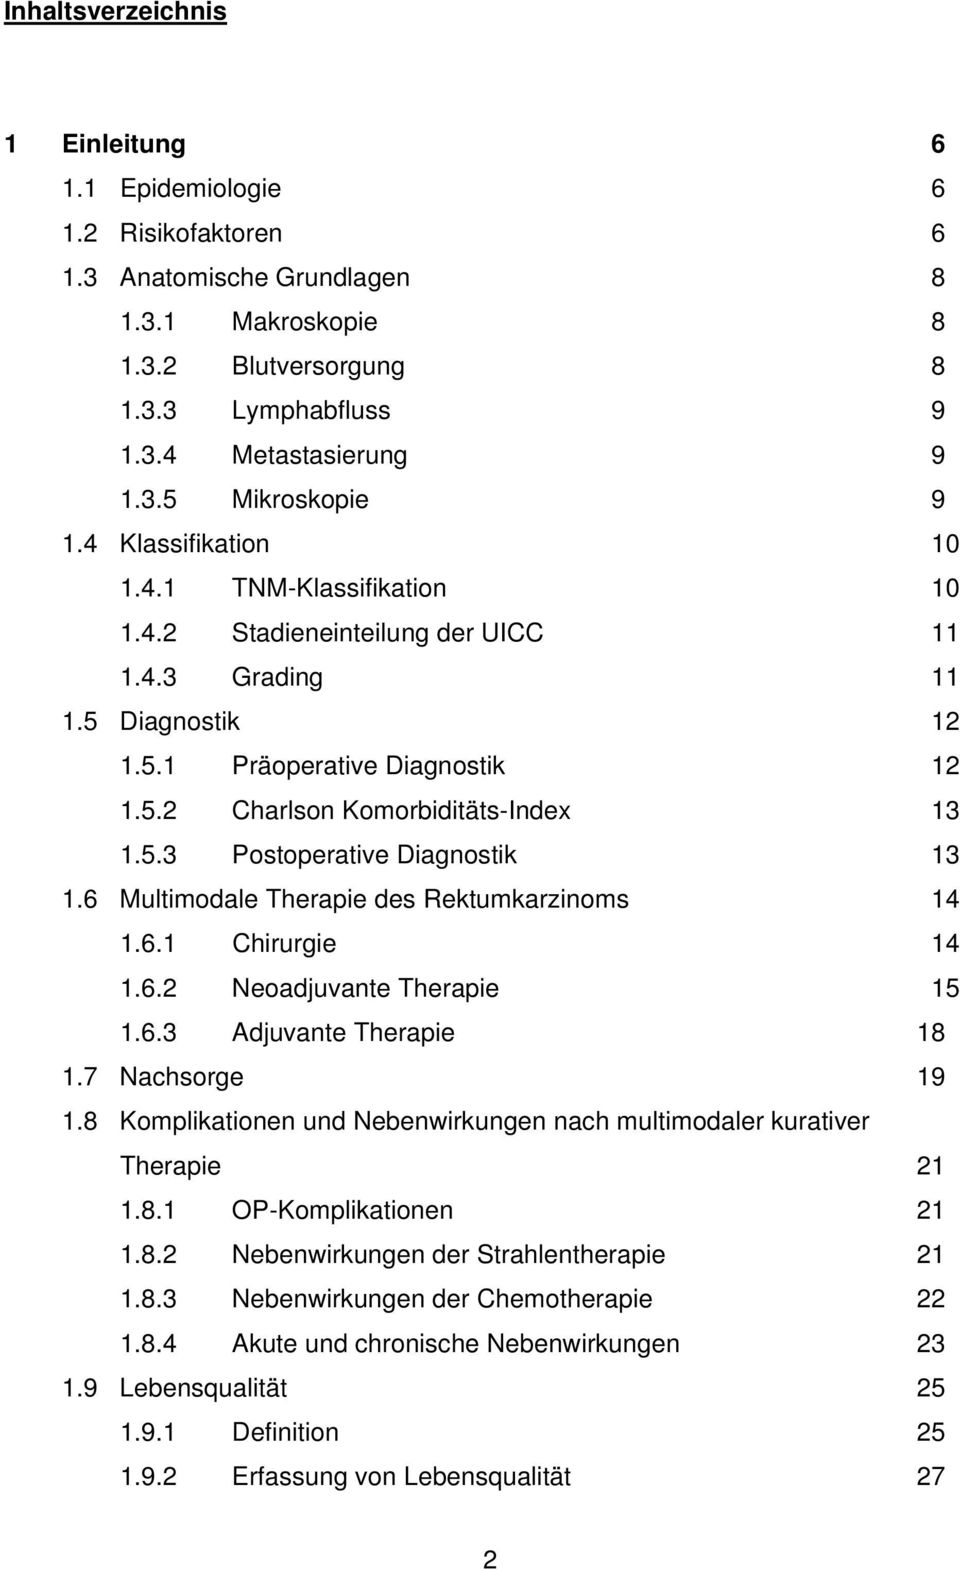 6 Multimodale Therapie des Rektumkarzinoms 14 1.6.1 Chirurgie 14 1.6.2 Neoadjuvante Therapie 15 1.6.3 Adjuvante Therapie 18 1.7 Nachsorge 19 1.